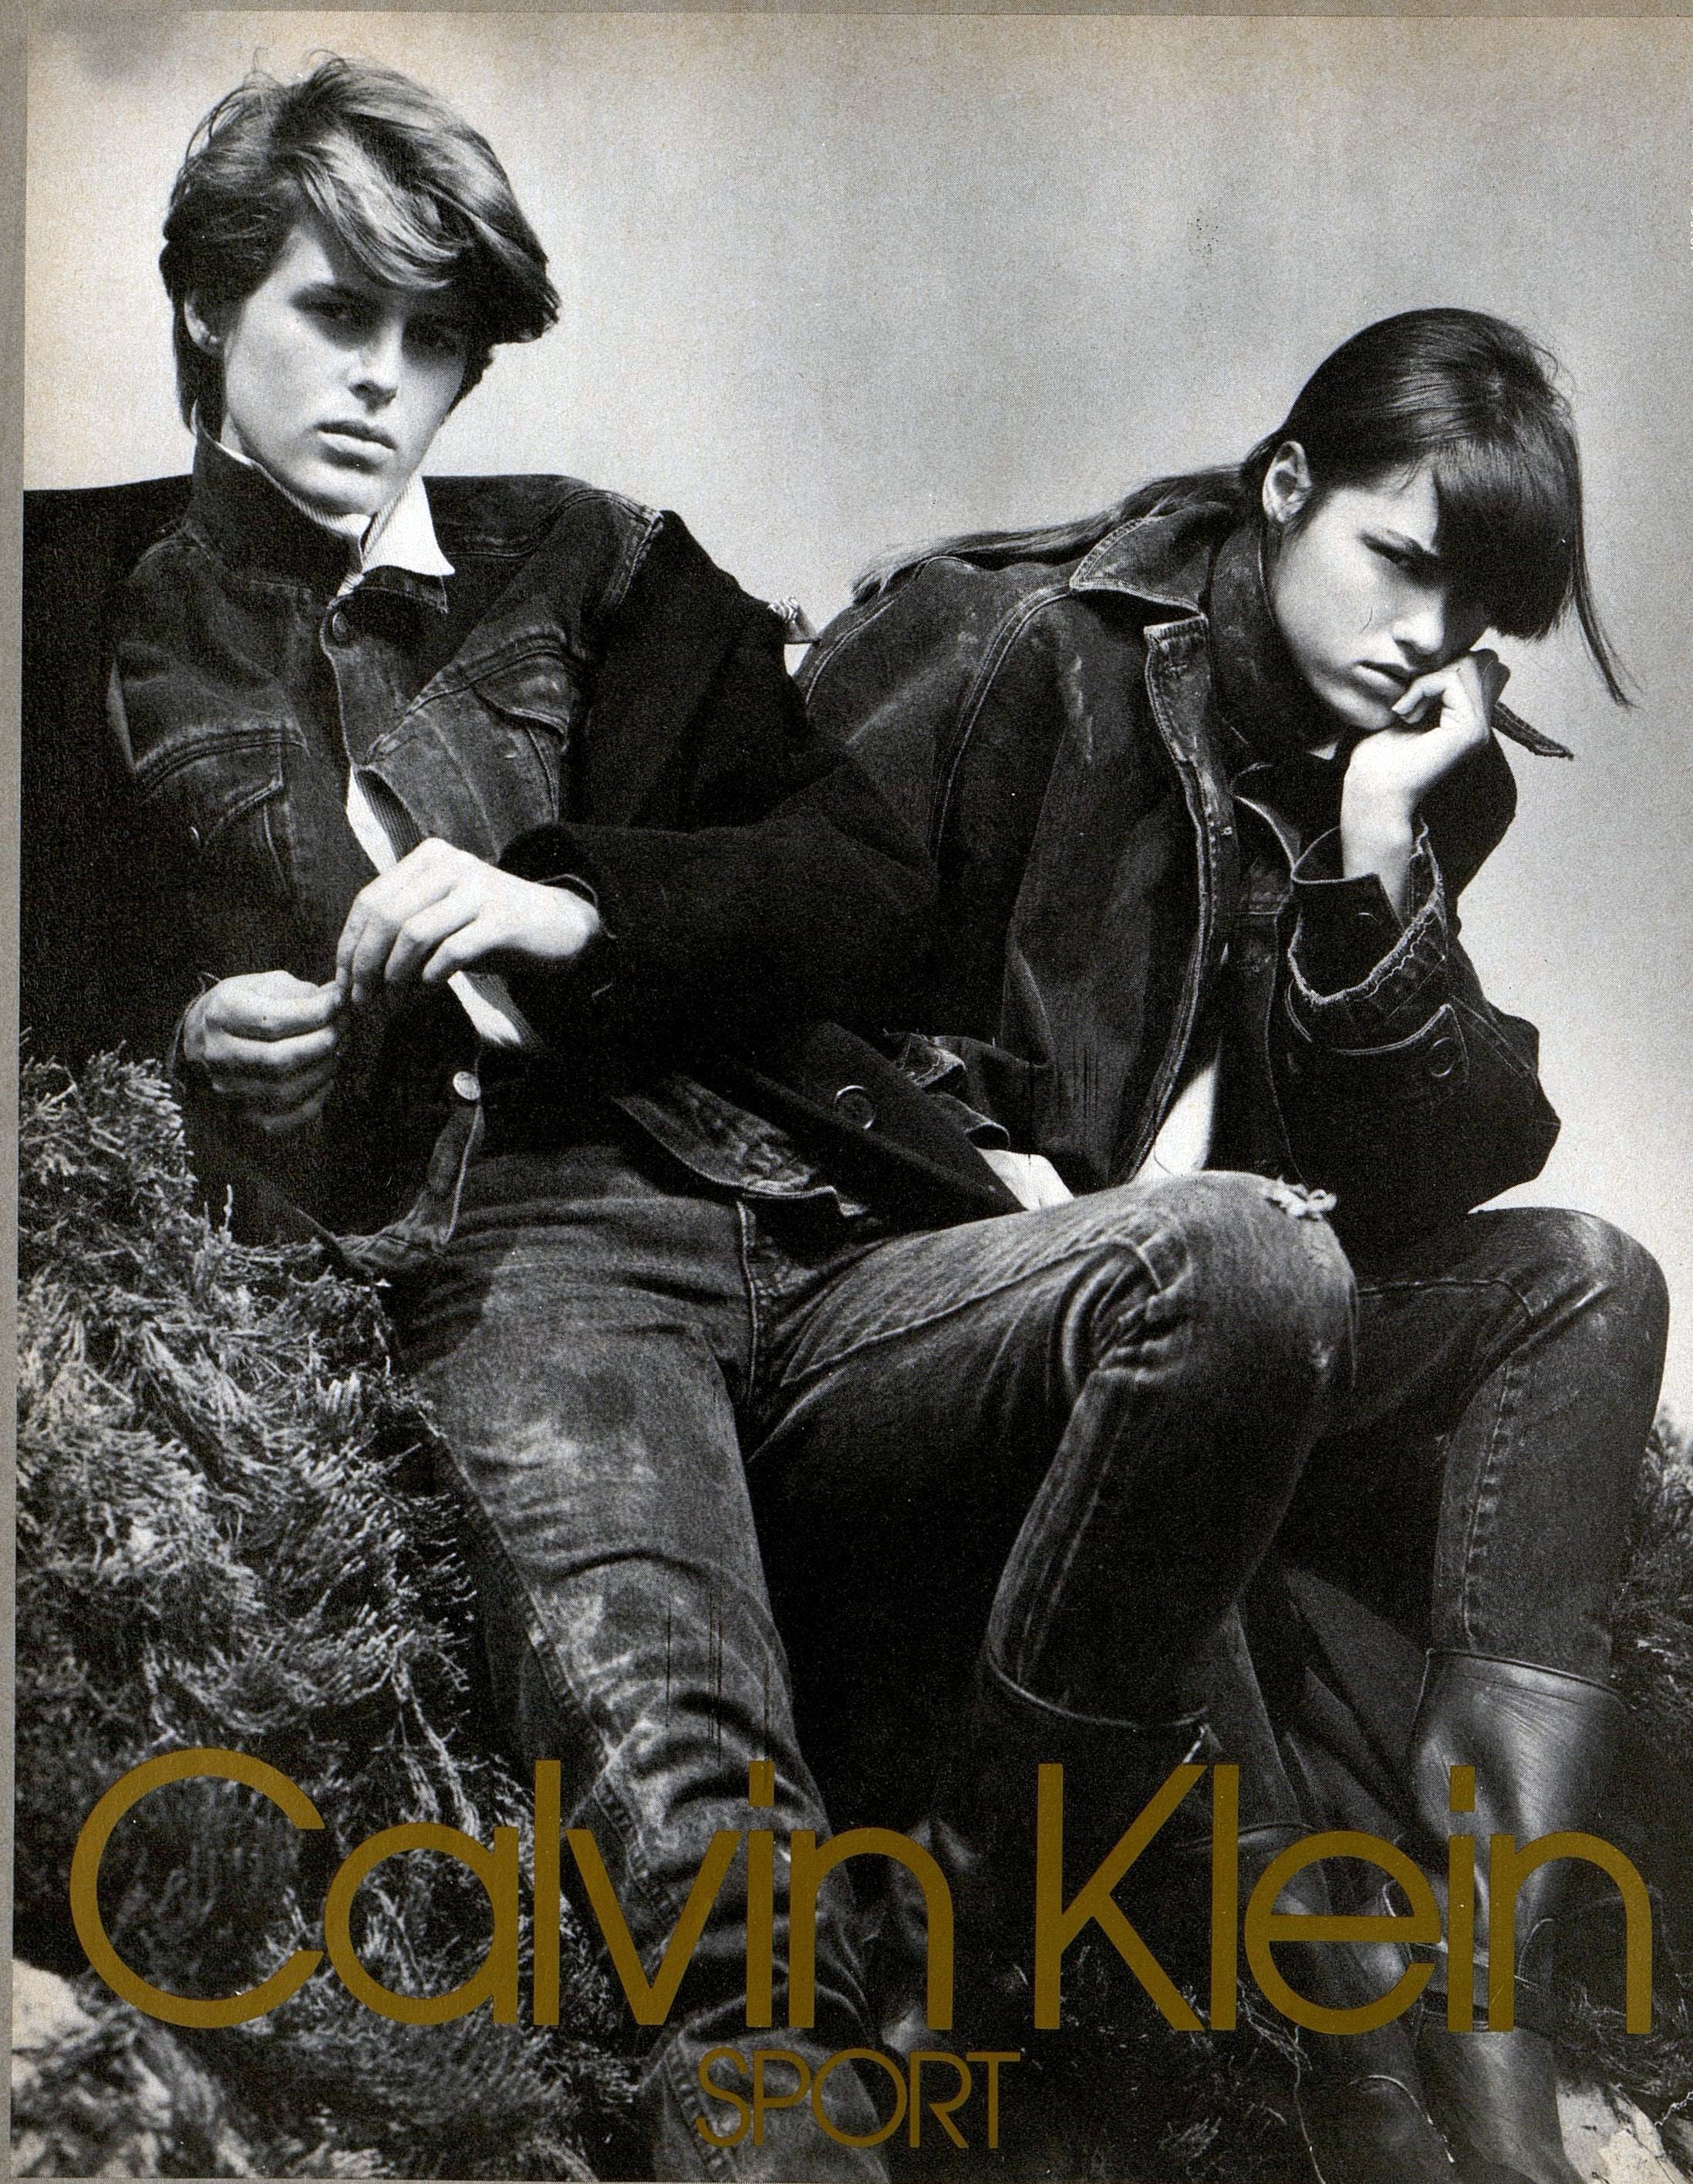 CK One by Calvin Klein (1994 Vintage)